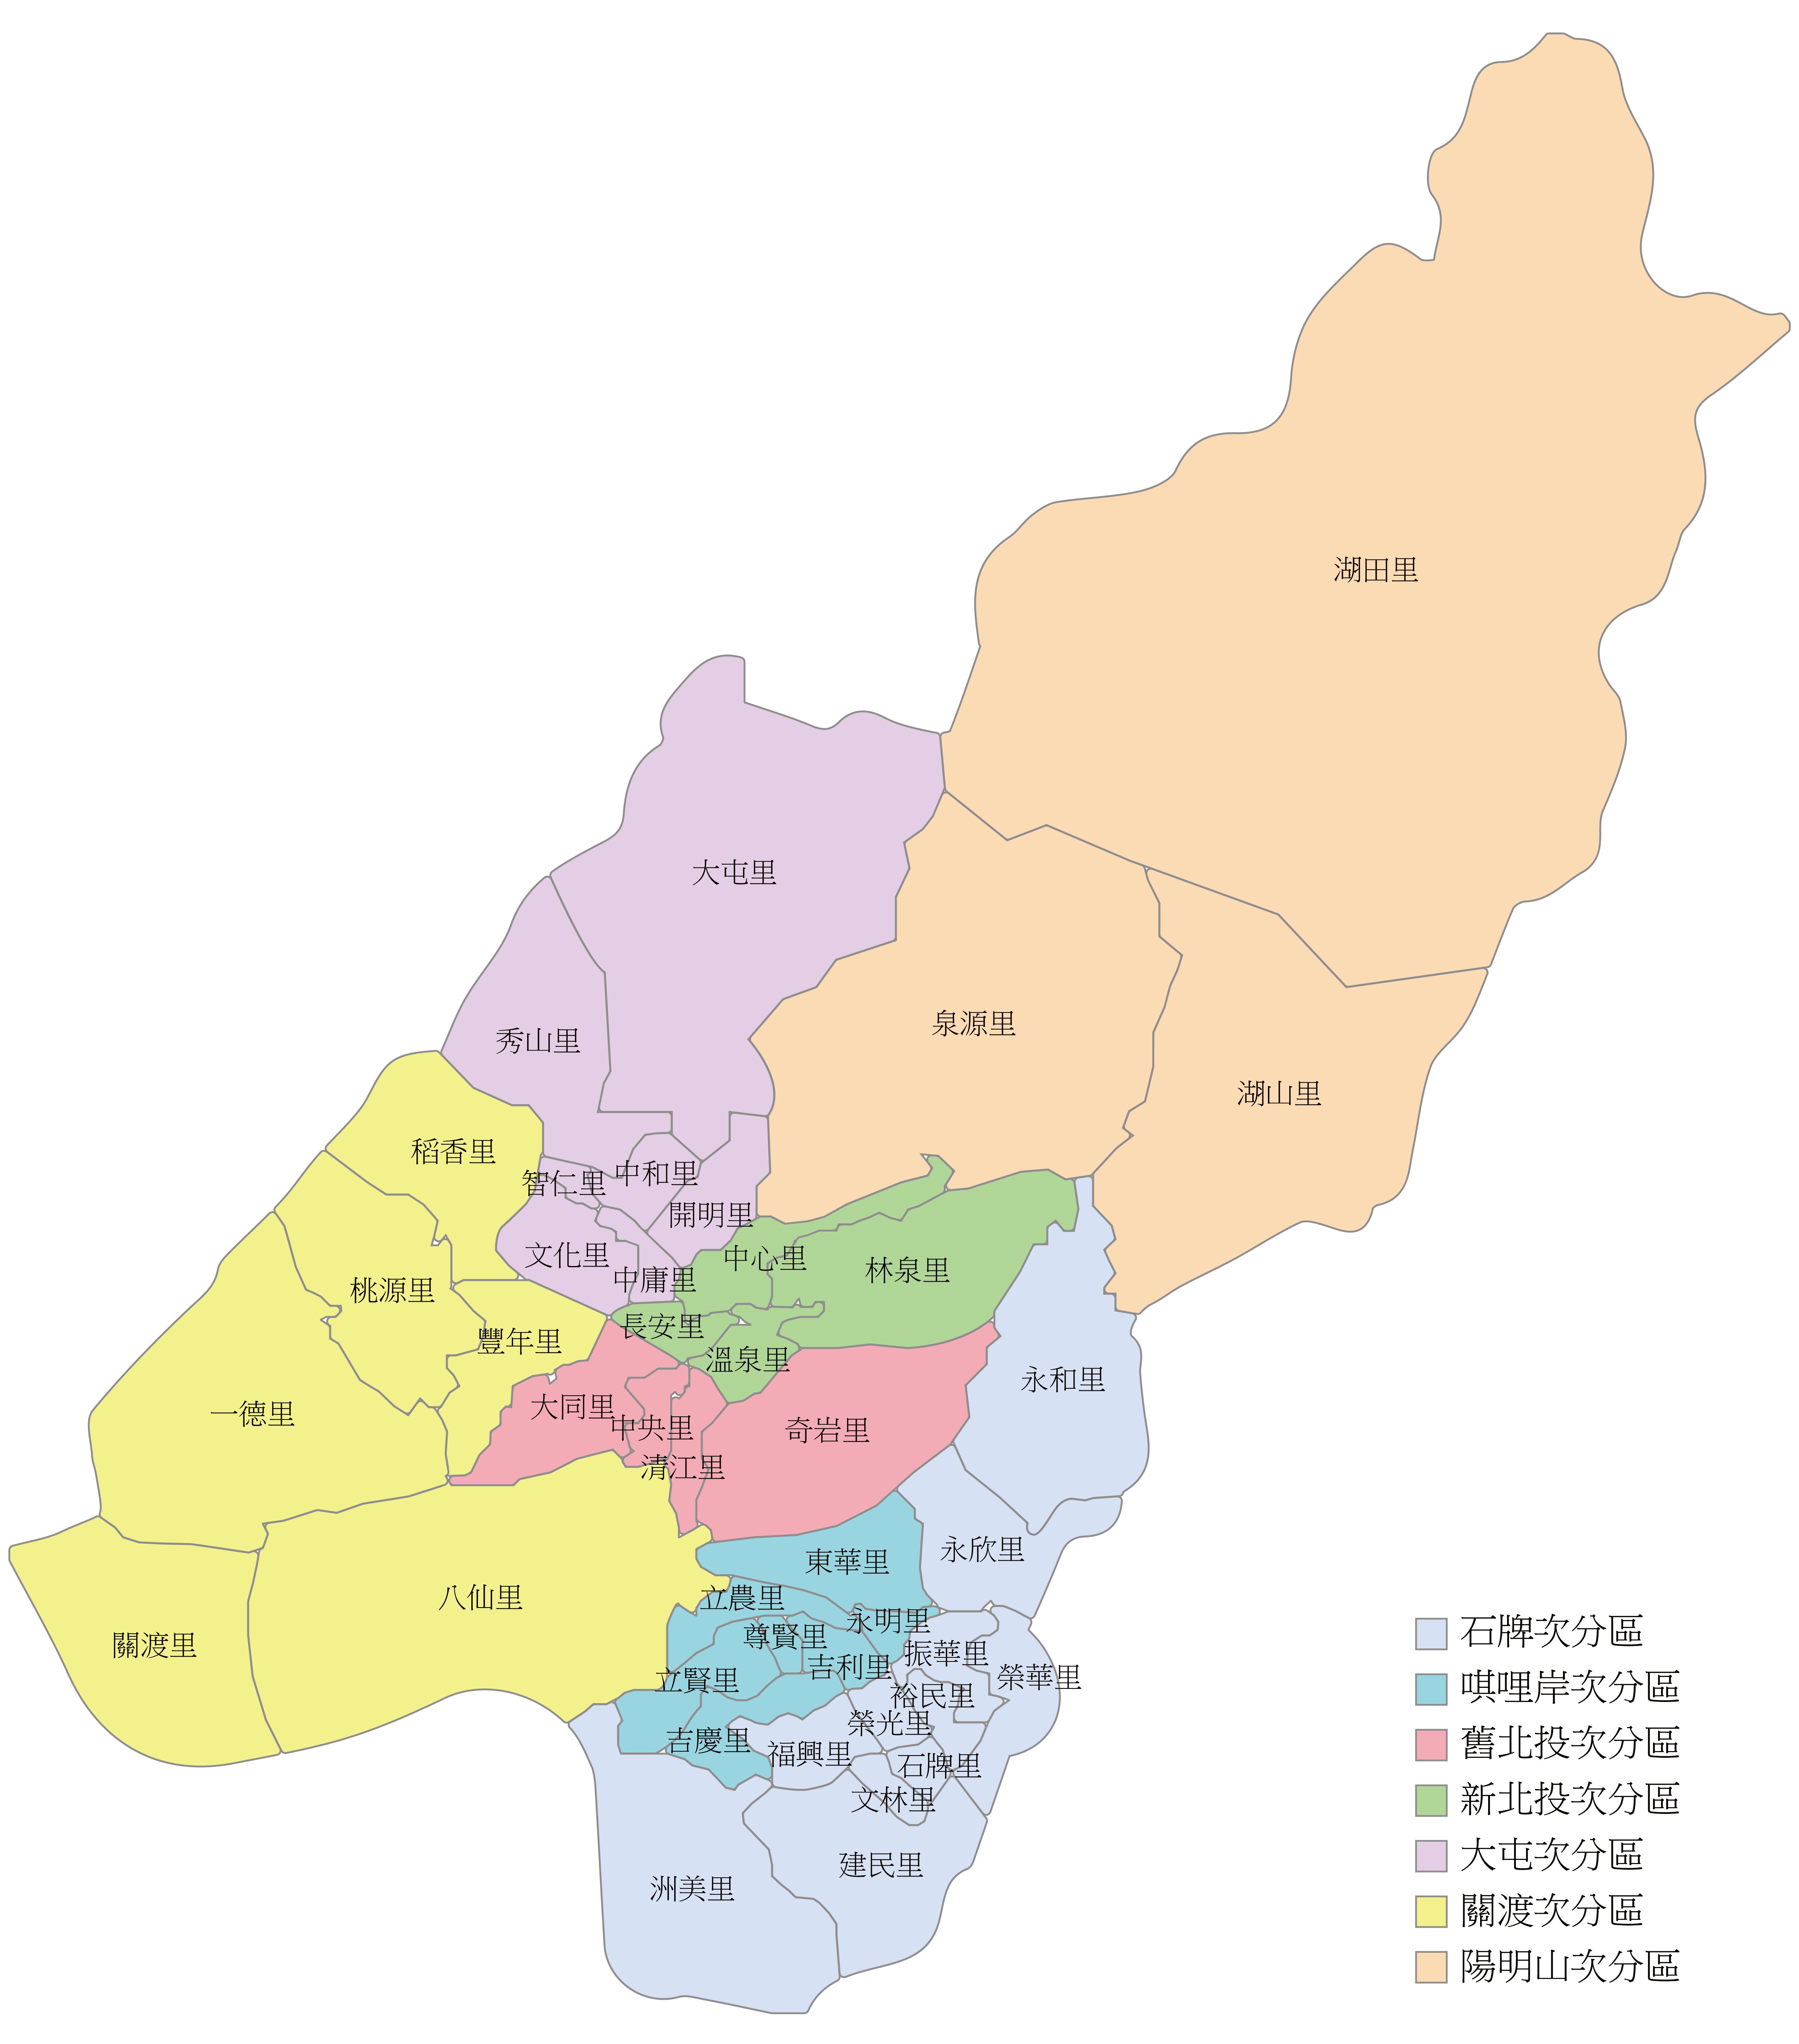 本圖為臺北市北投區各里分布圖，依照顏色表示次分區分類；並於區塊標示各里里名